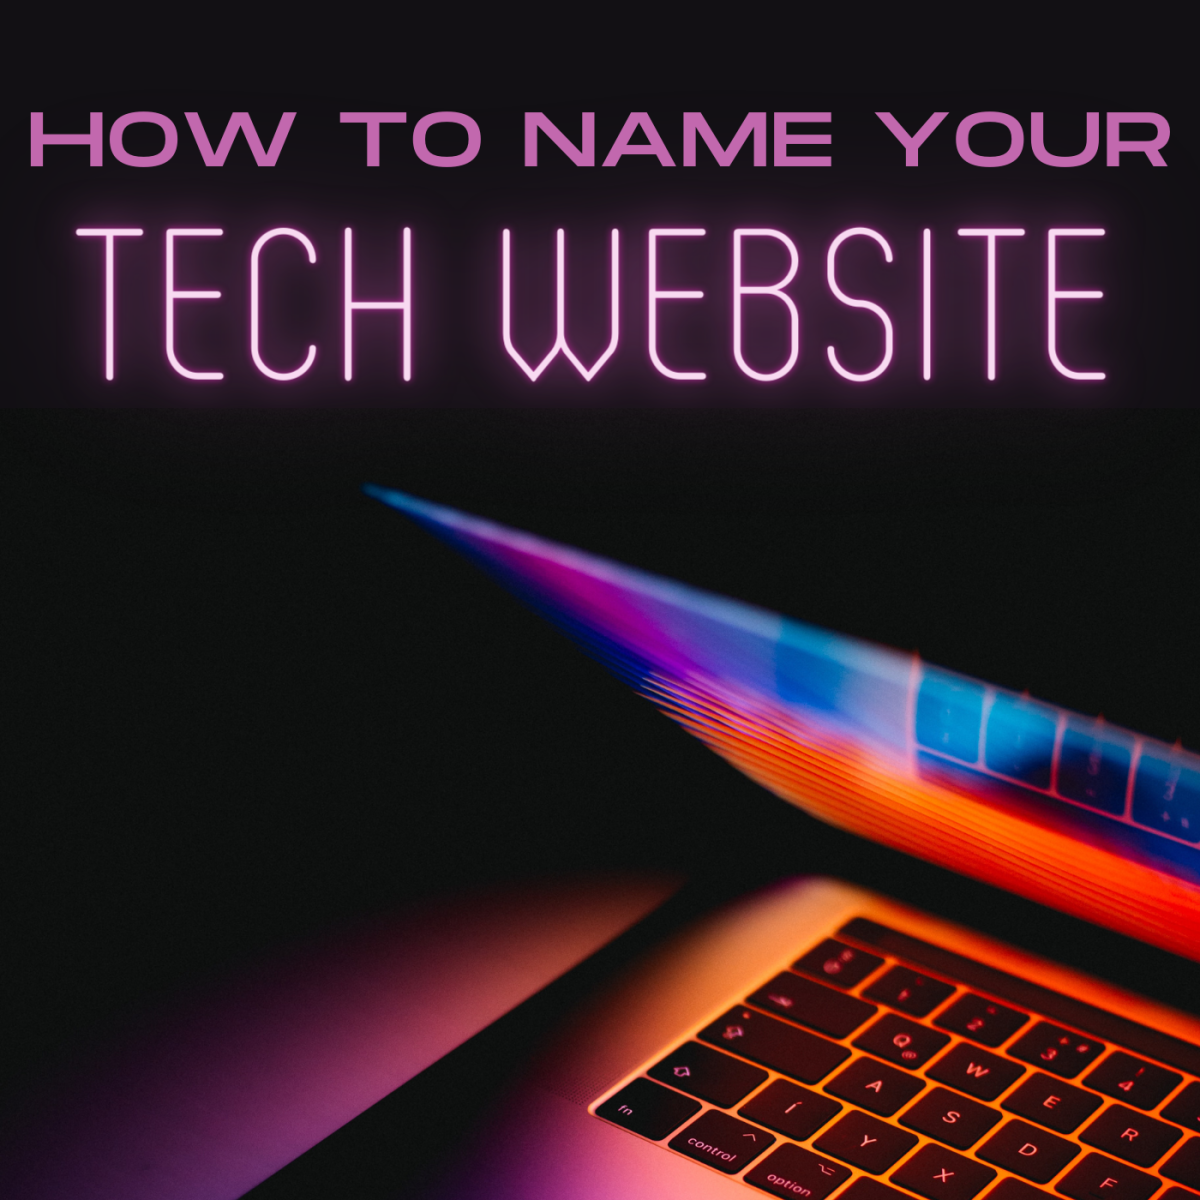 Unique Name Ideas for a Tech Website